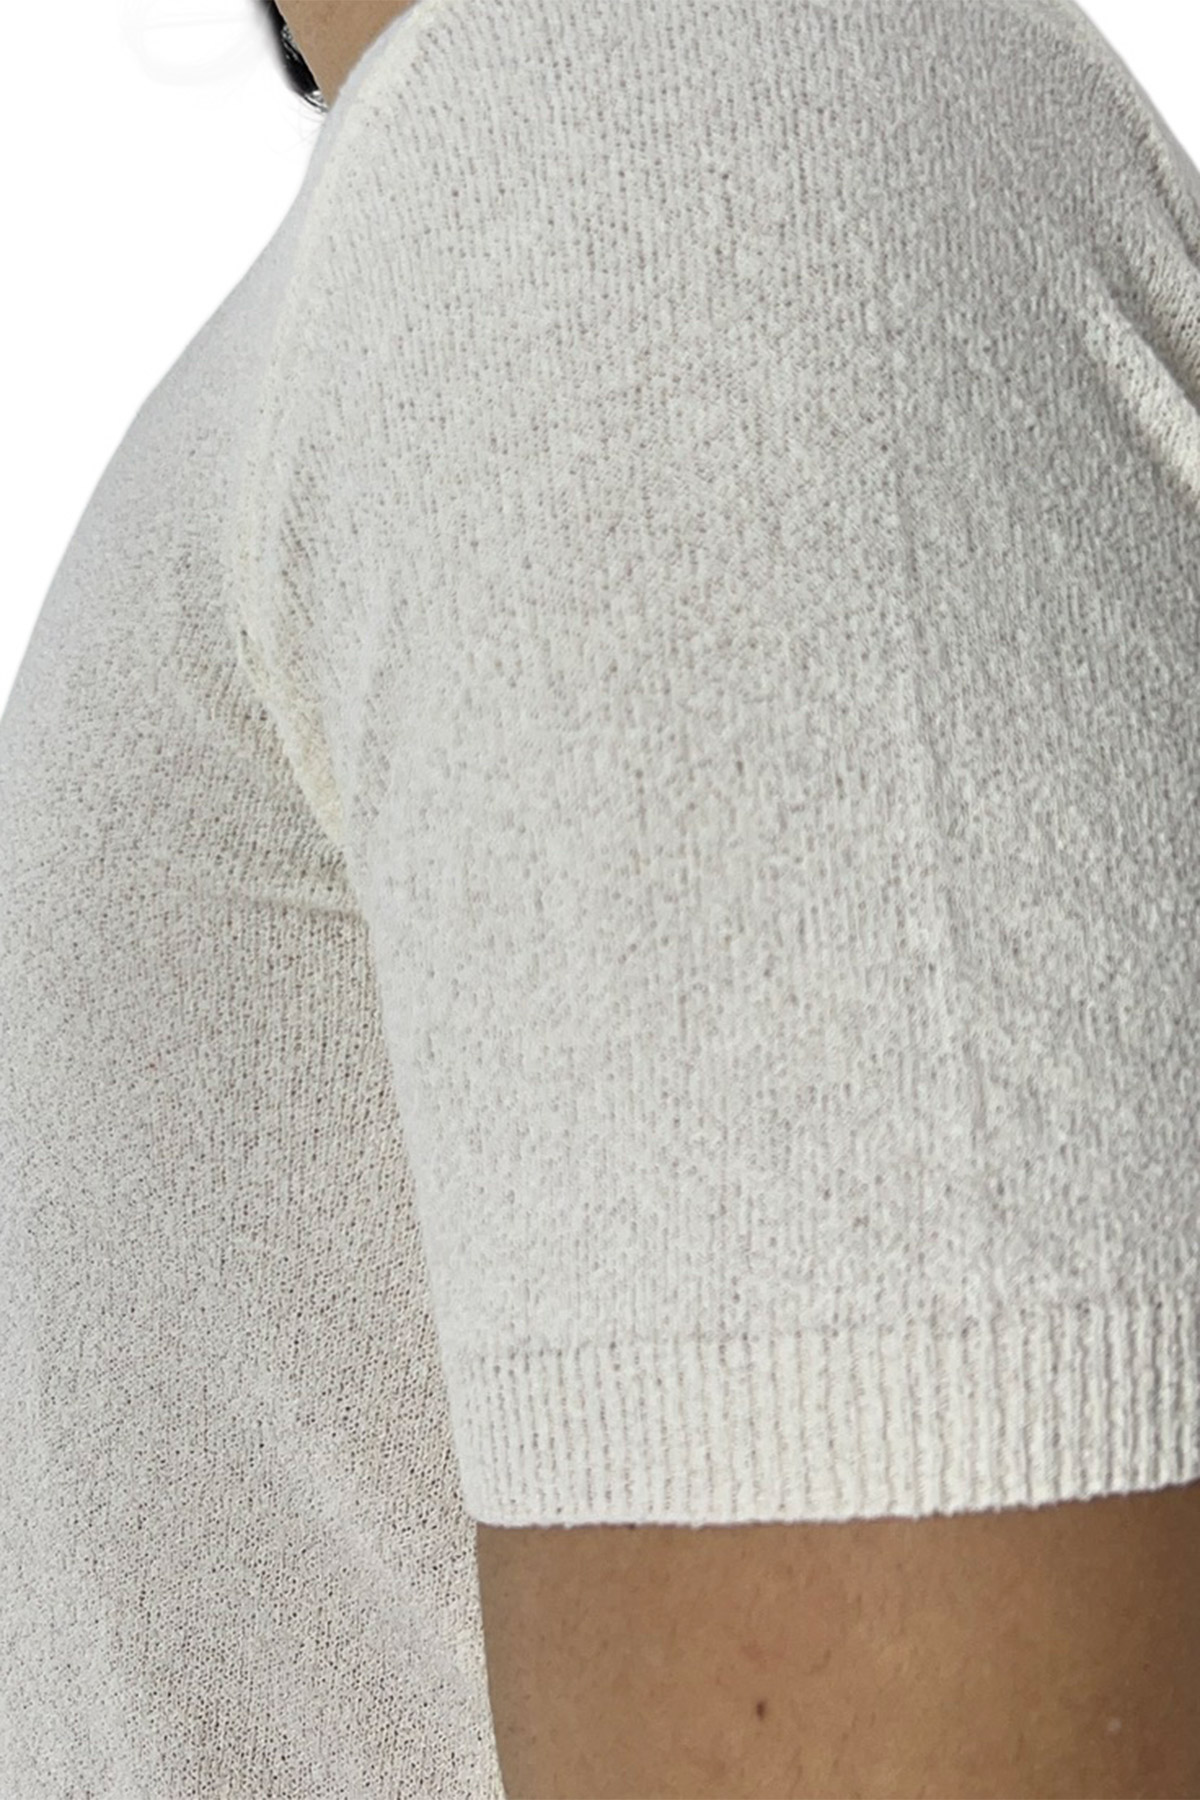 Maglioncino da uomo Bianco mezze maniche 100% cotone effetto spugna tinta unita